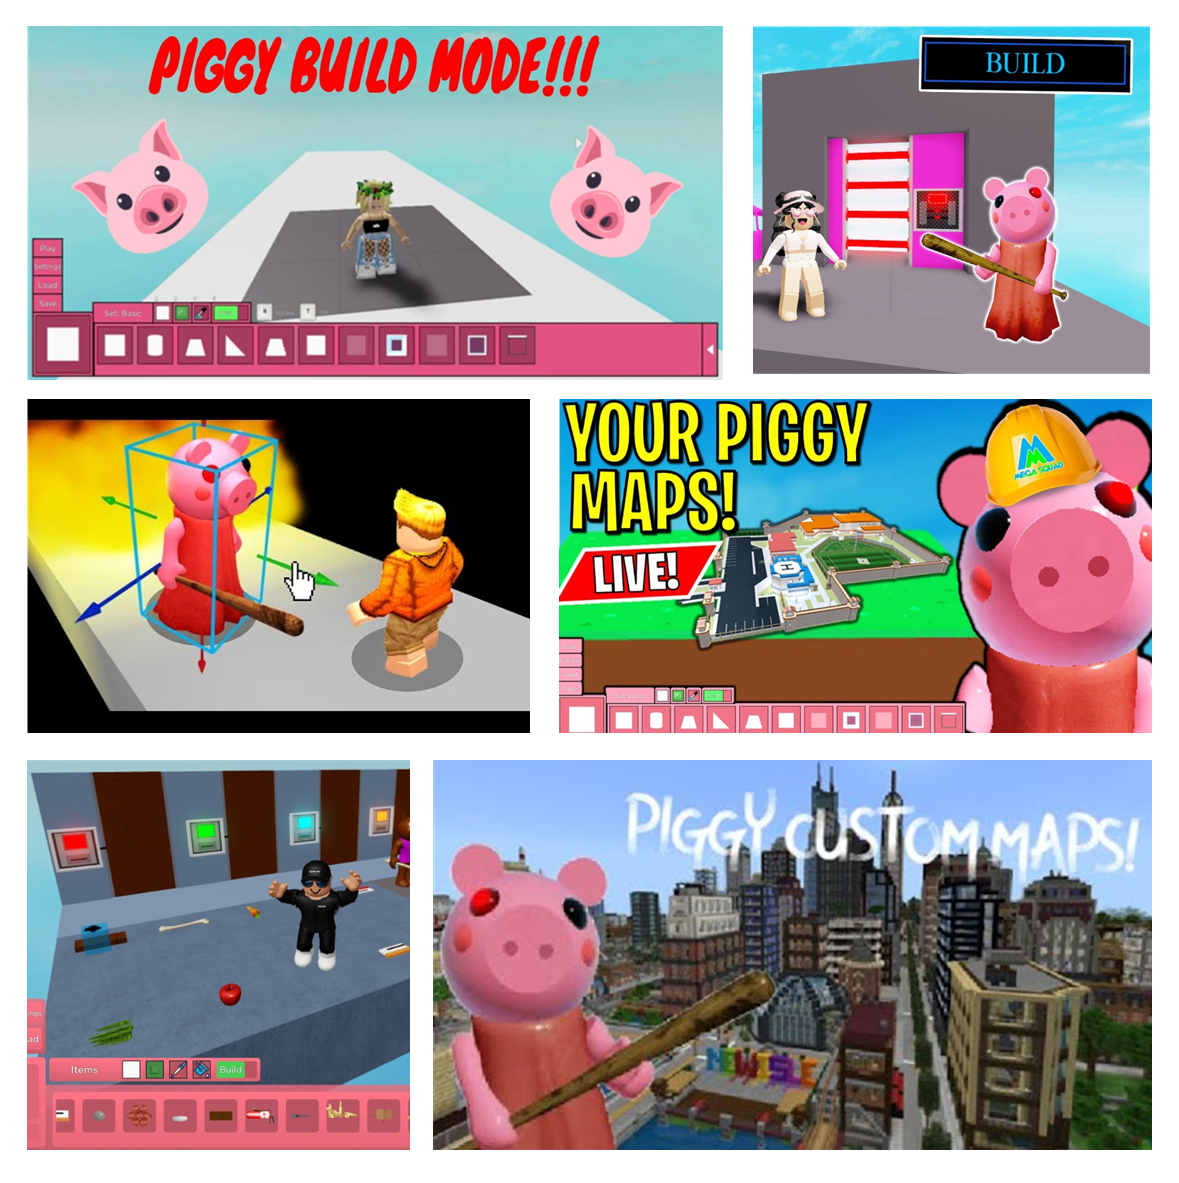 piggy build mode